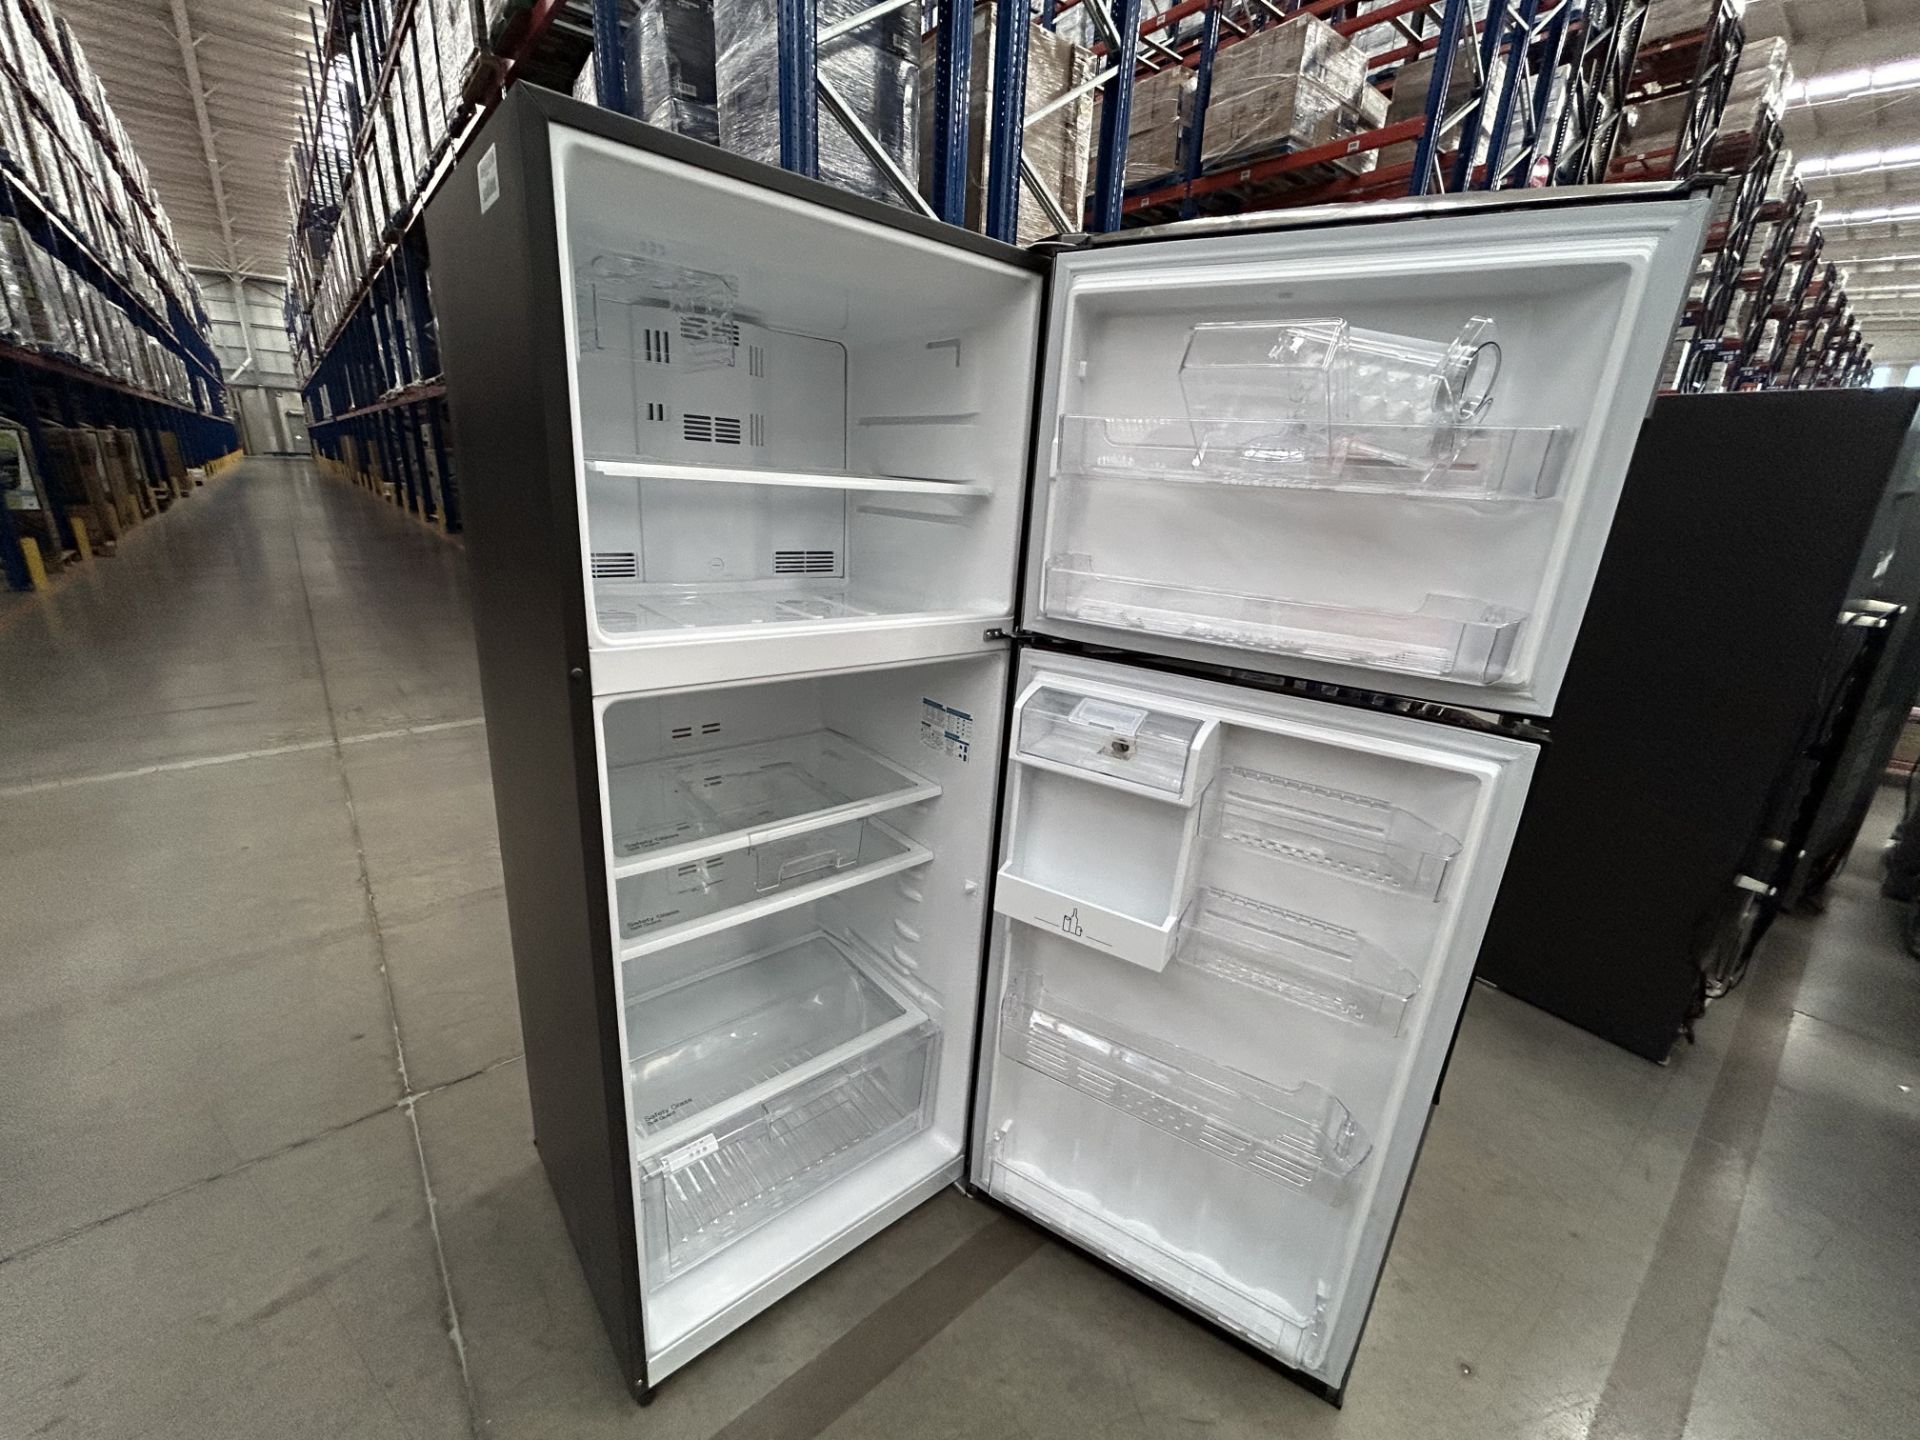 Lote de 2 refrigeradores contiene: 1 Refrigerador con dispensador de agua Marca MABE, Modelo RMS510 - Image 6 of 7